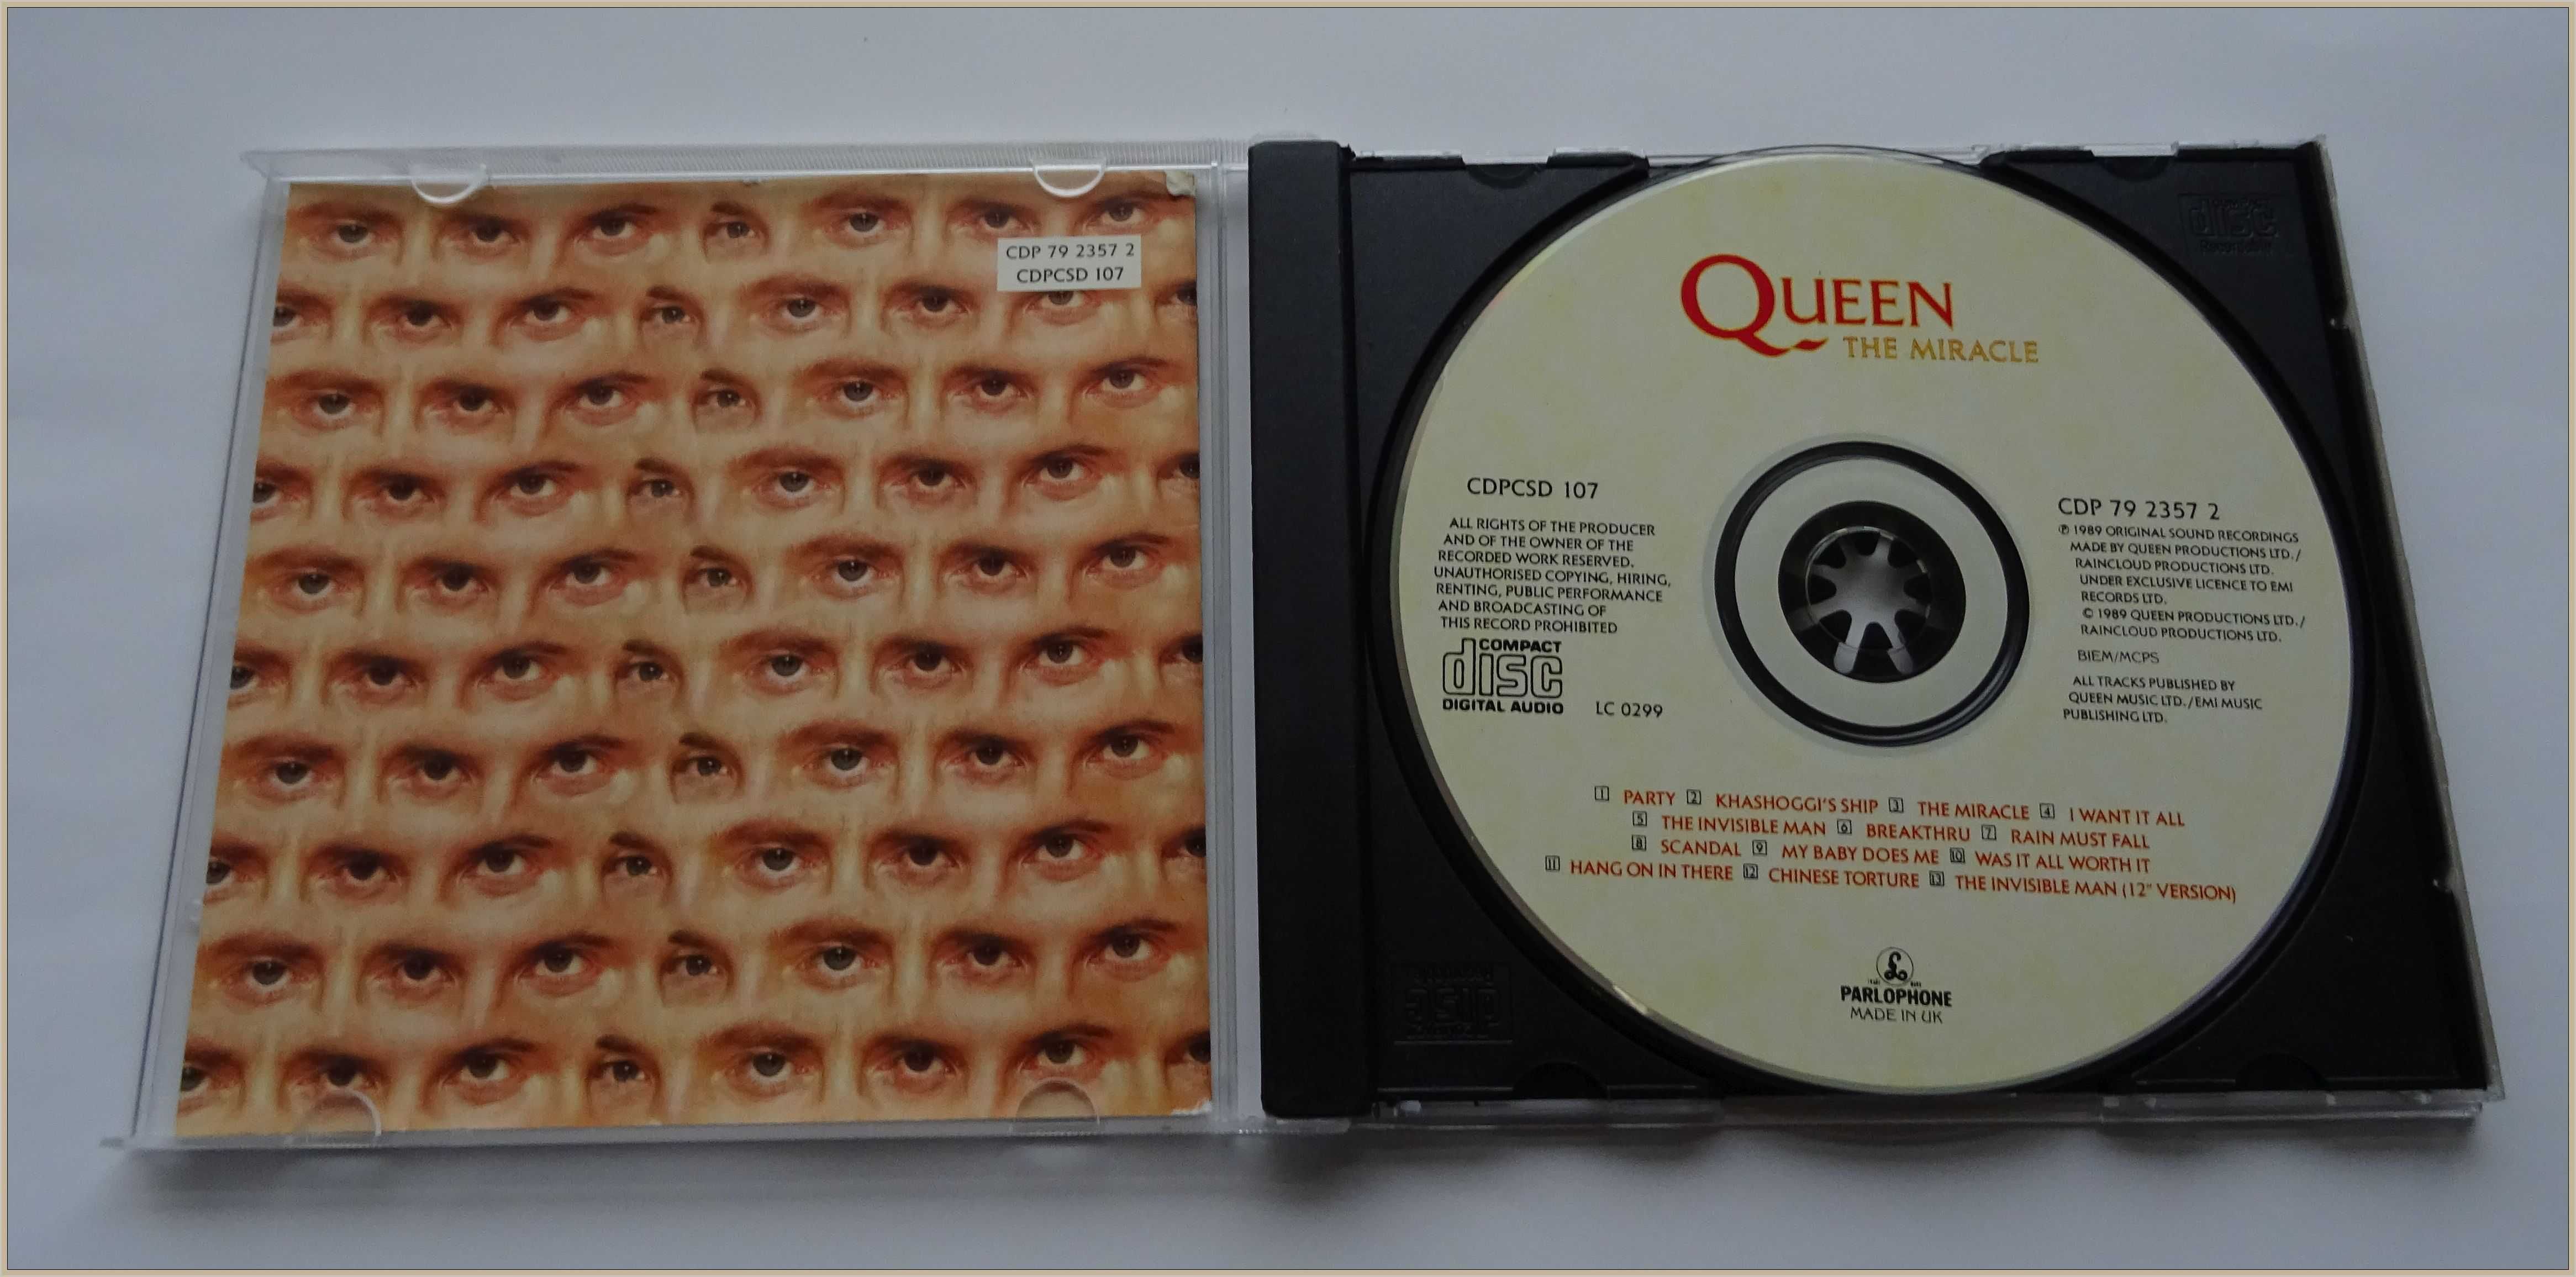 Queen - The Miracle (Album, CD)